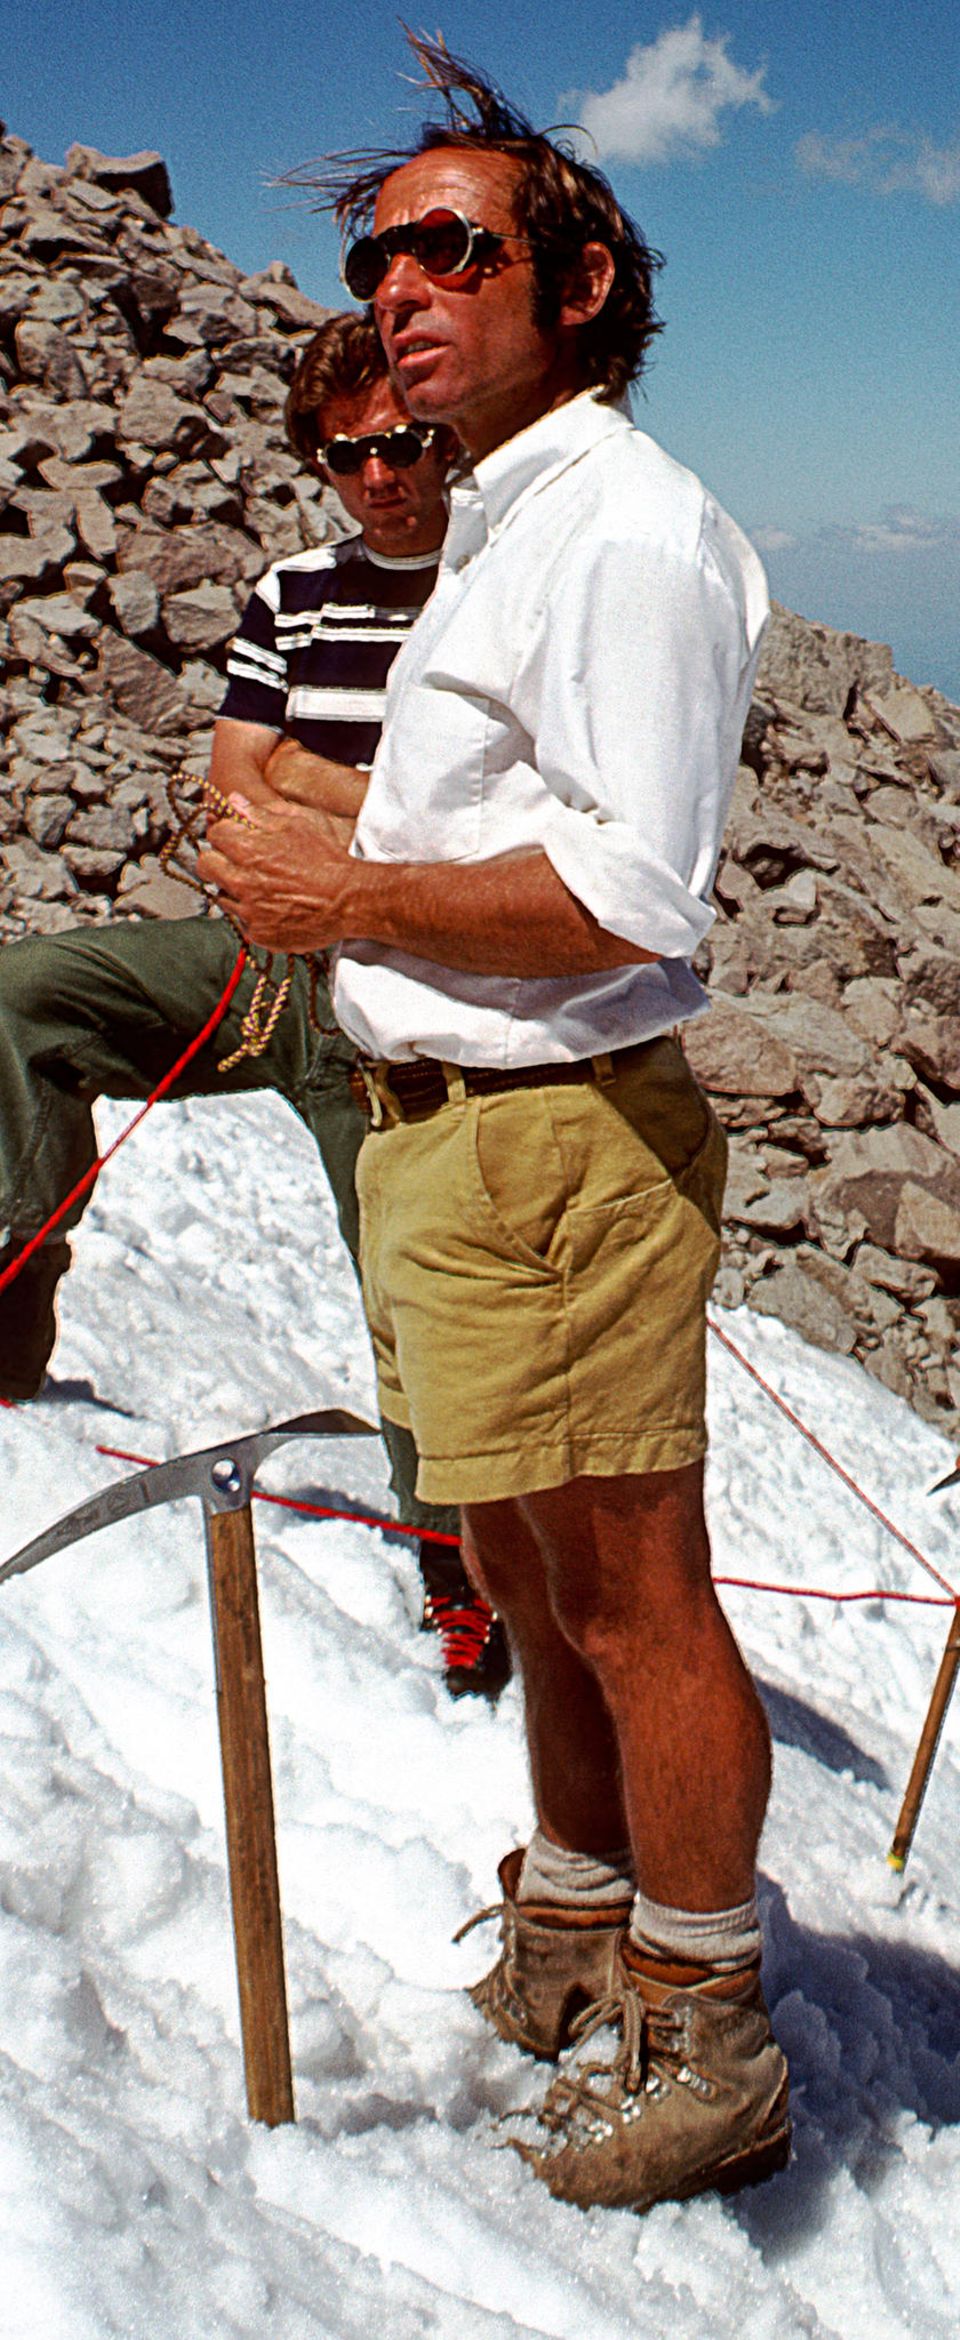 Chouinard als Kletterer auf einem Foto aus dem Jahr 1970